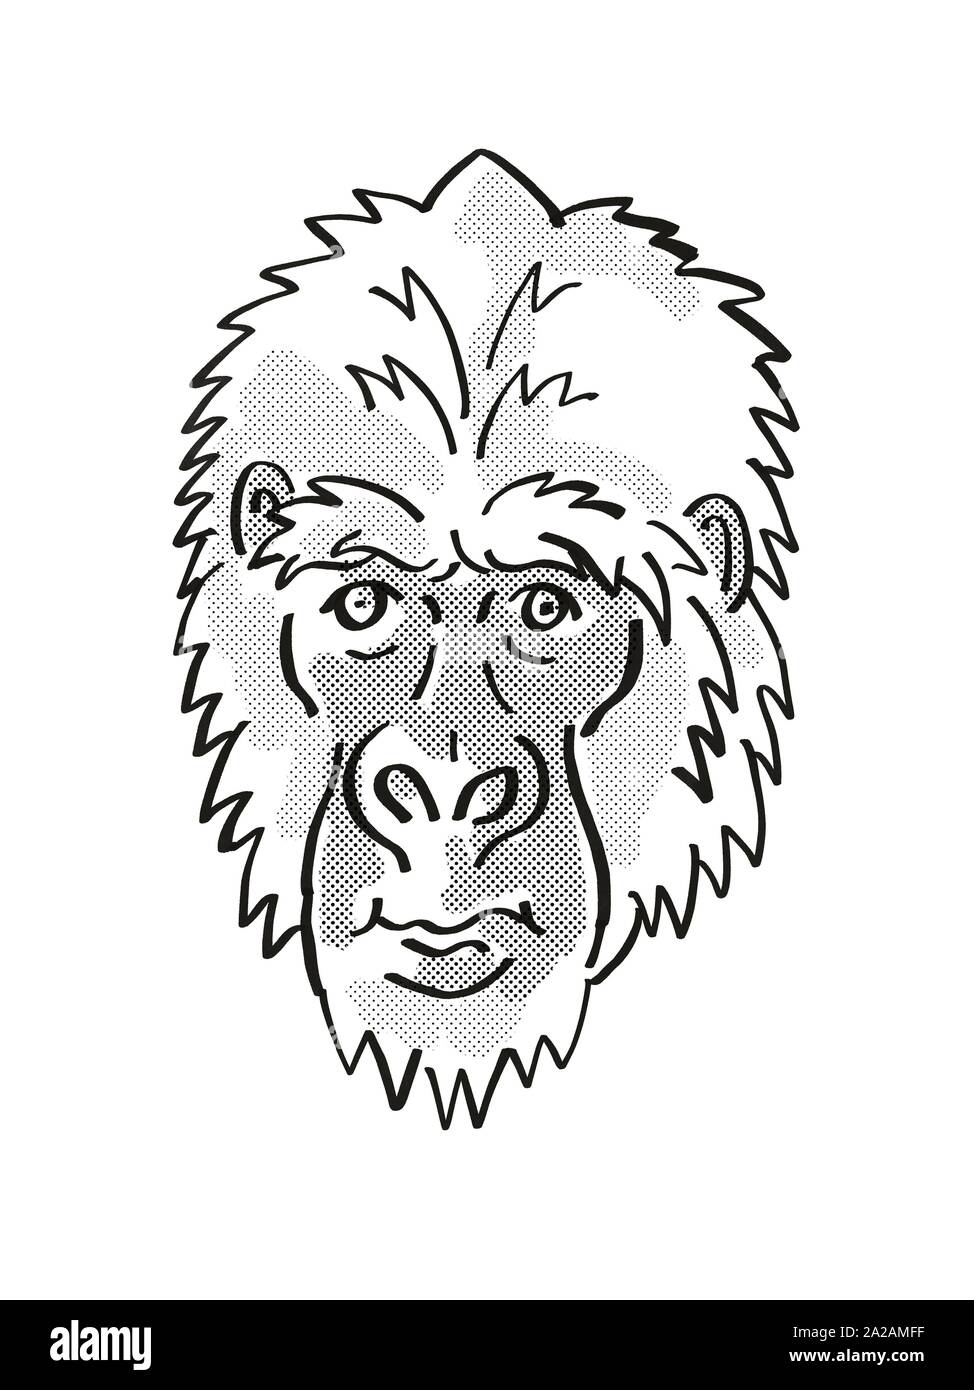 Retro cartoon style ligne mono dessin de tête d'un gorille de l'Est Gorilla Berengei ou, une espèce d'espèces isolées sur fond blanc d Banque D'Images